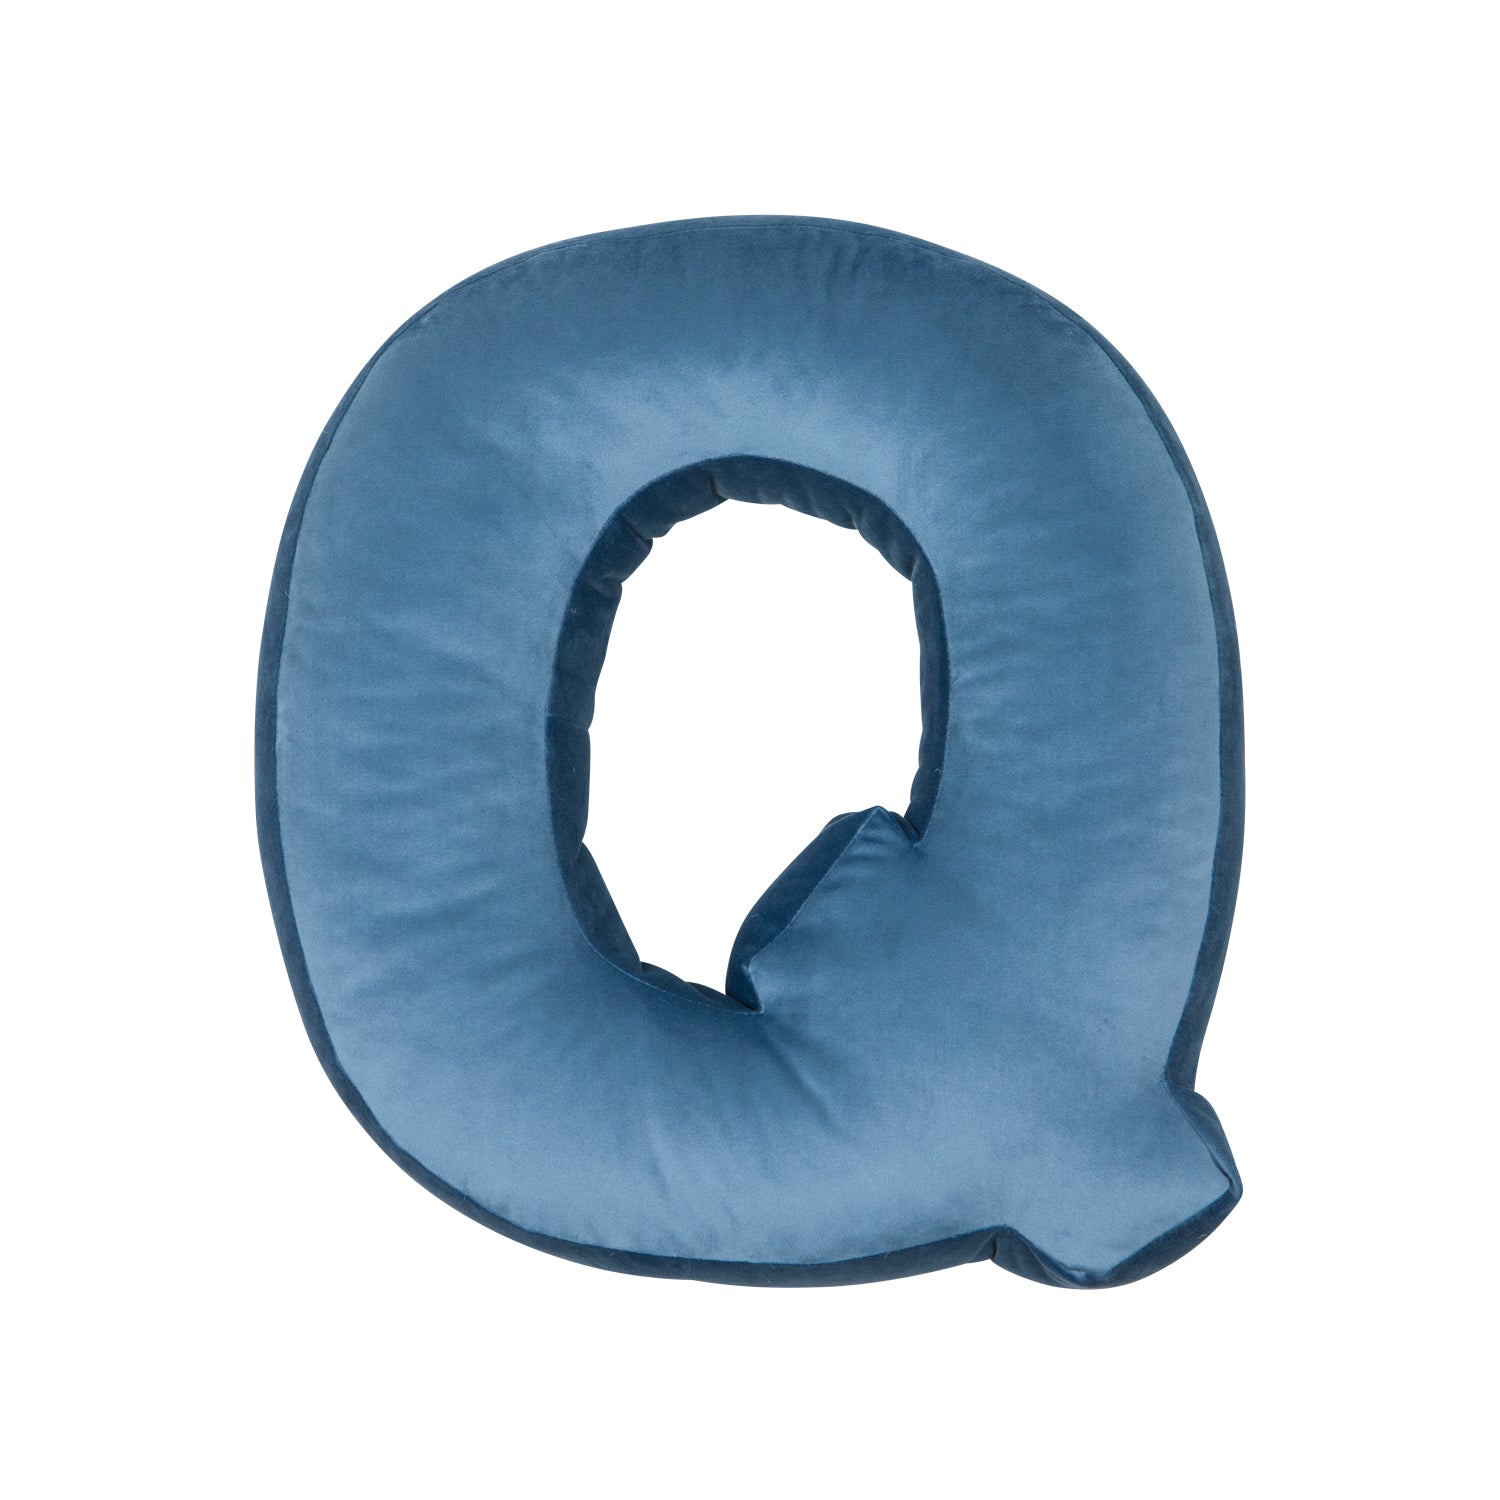 Poduszka literka welurowa Q niebieska od Bettys Home